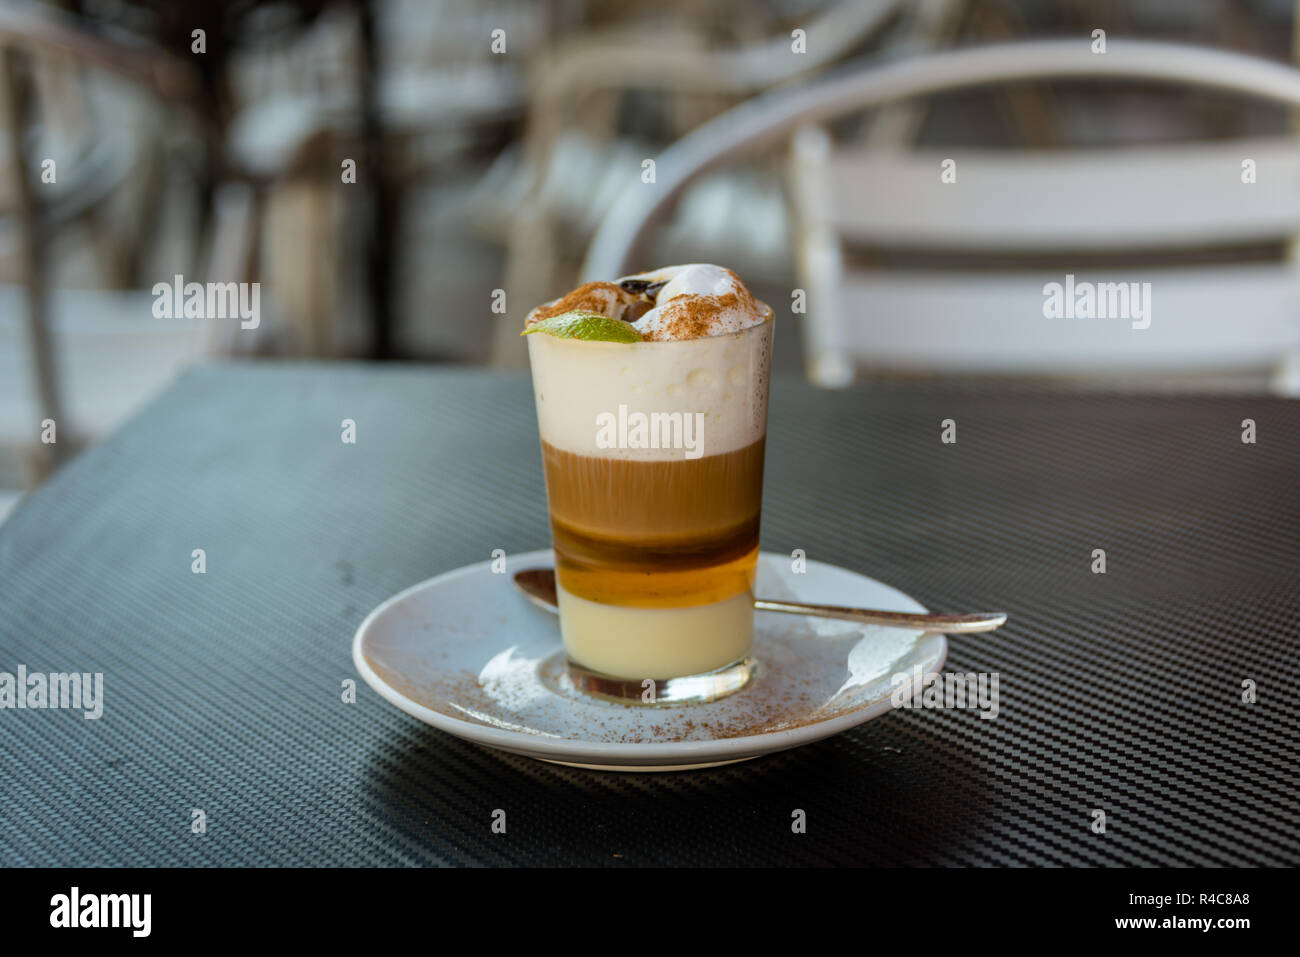 Barraquito espresso Café leche condensada leche de limón y canela, licor (Ron), Tenerife, España Foto de stock